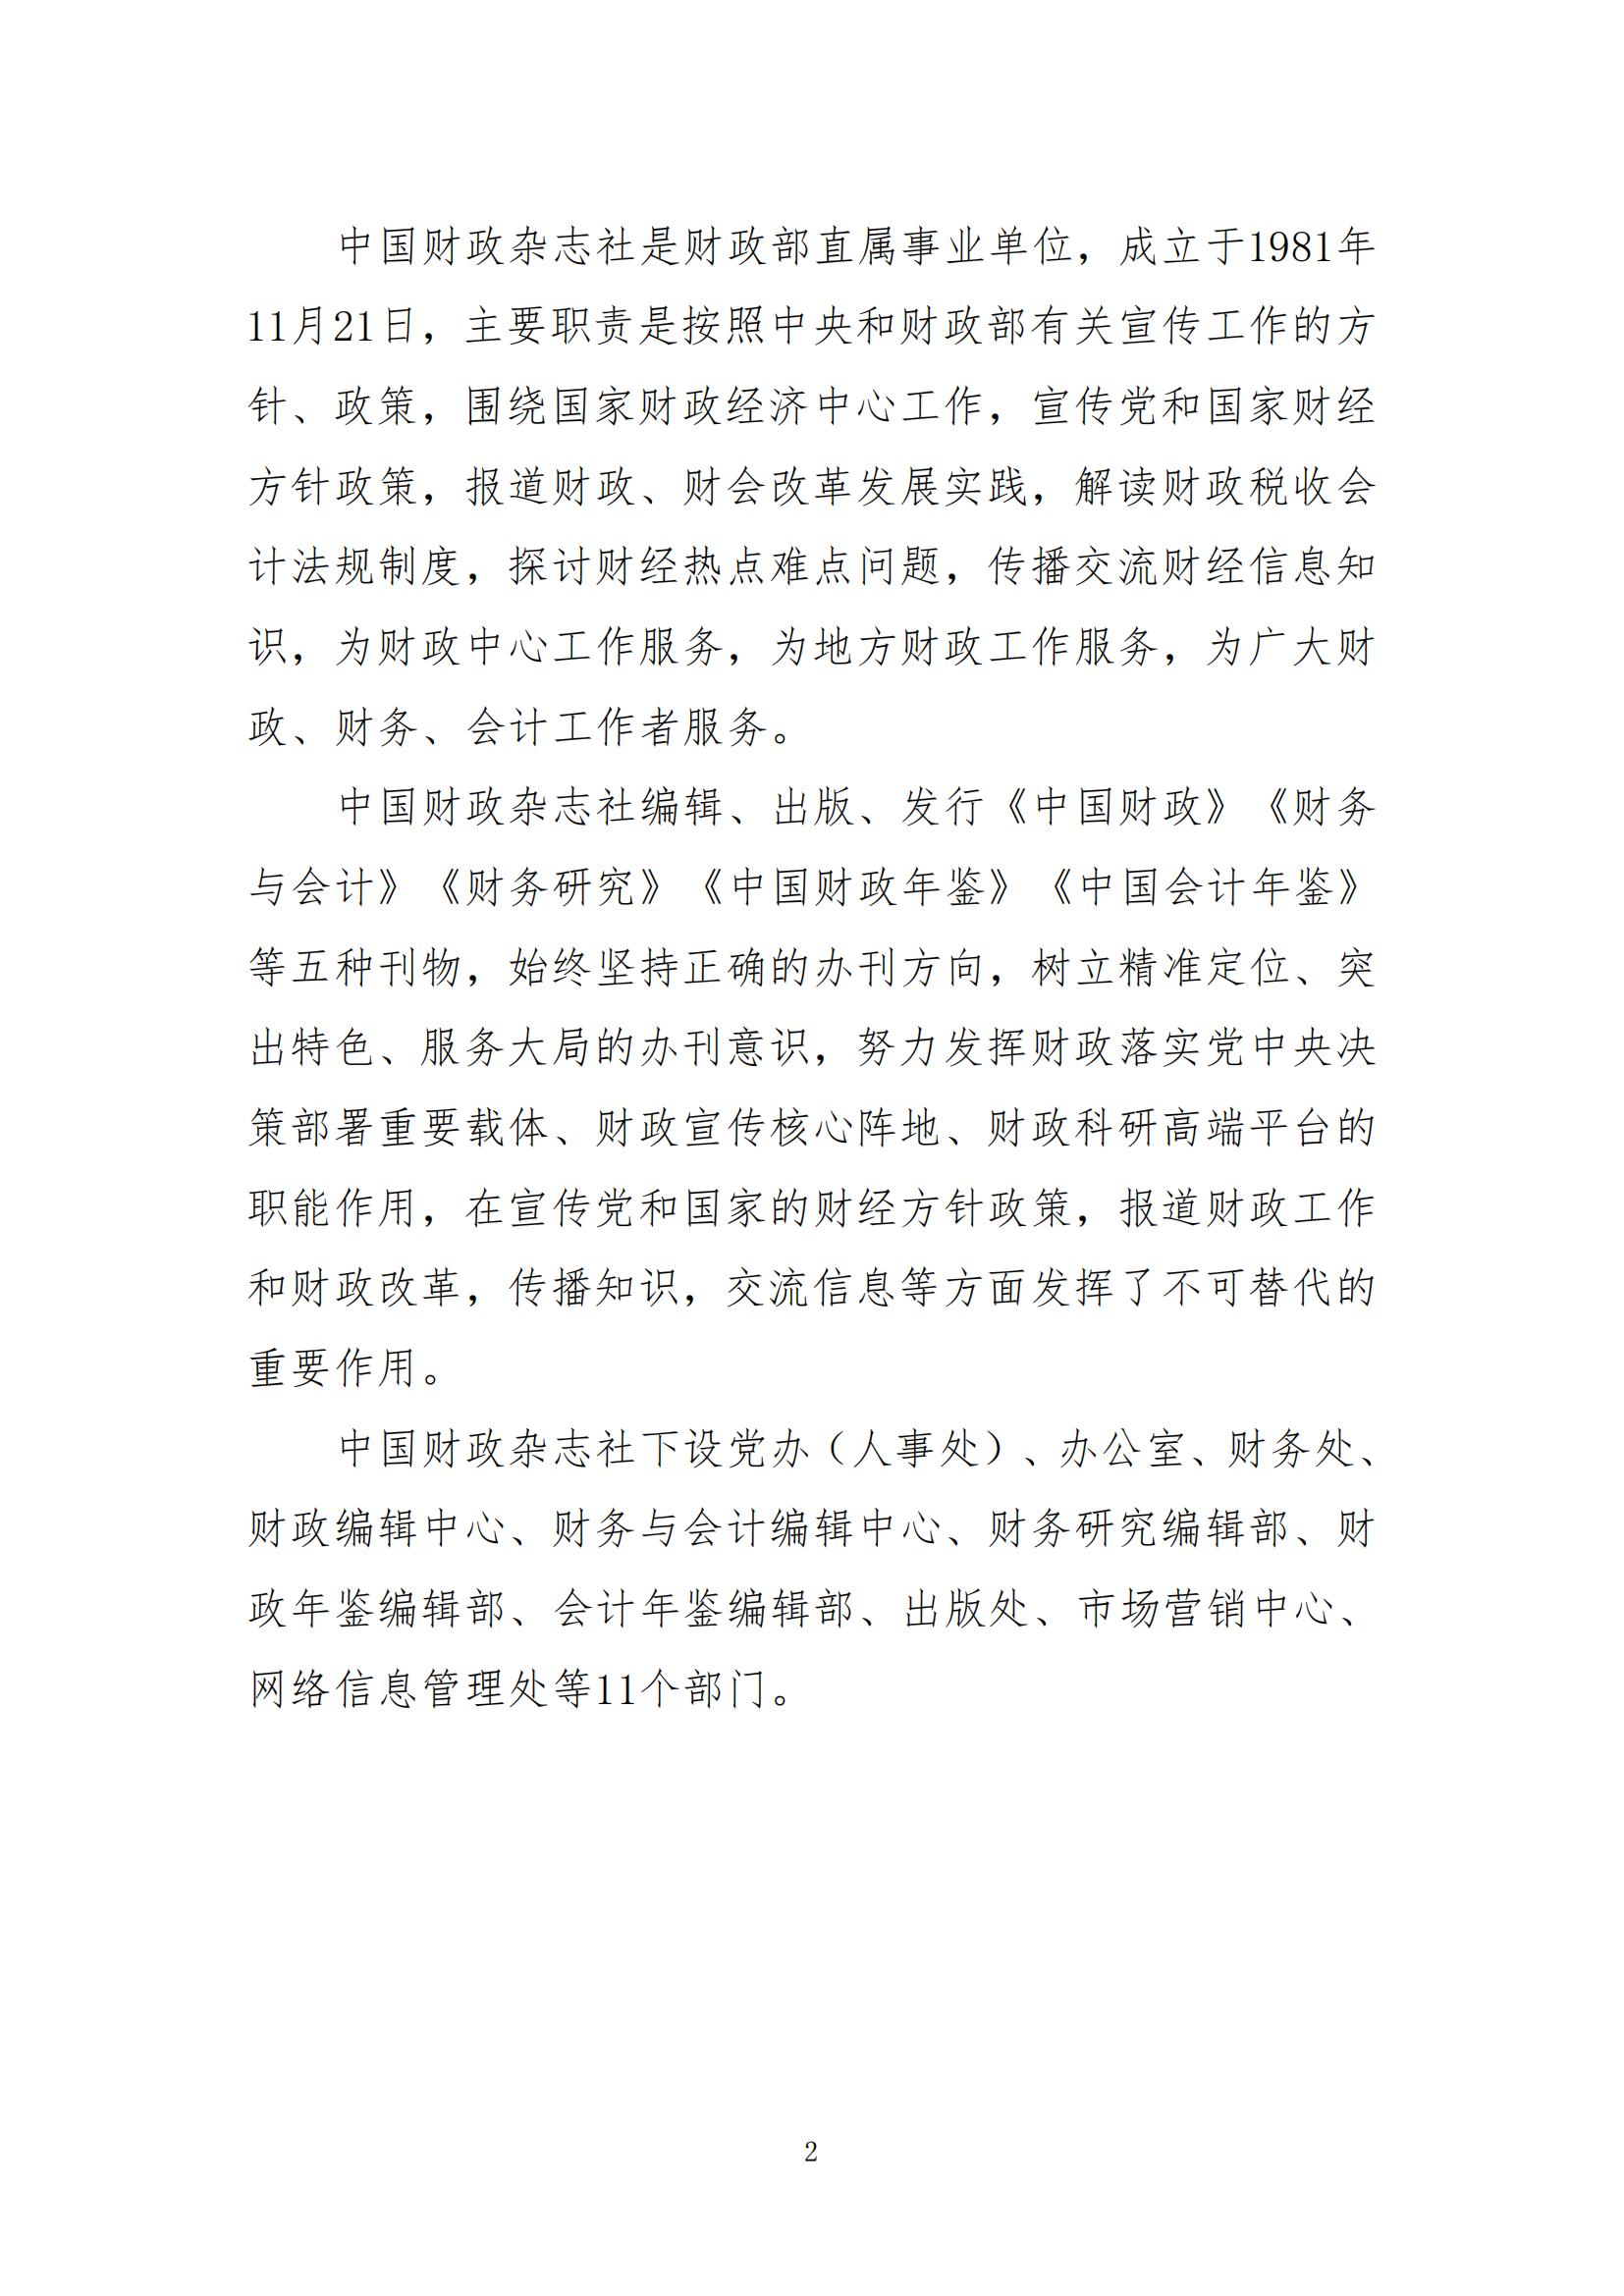 中国财政杂志社2021年度决算公开(8月10日周三统一公开）_04.png